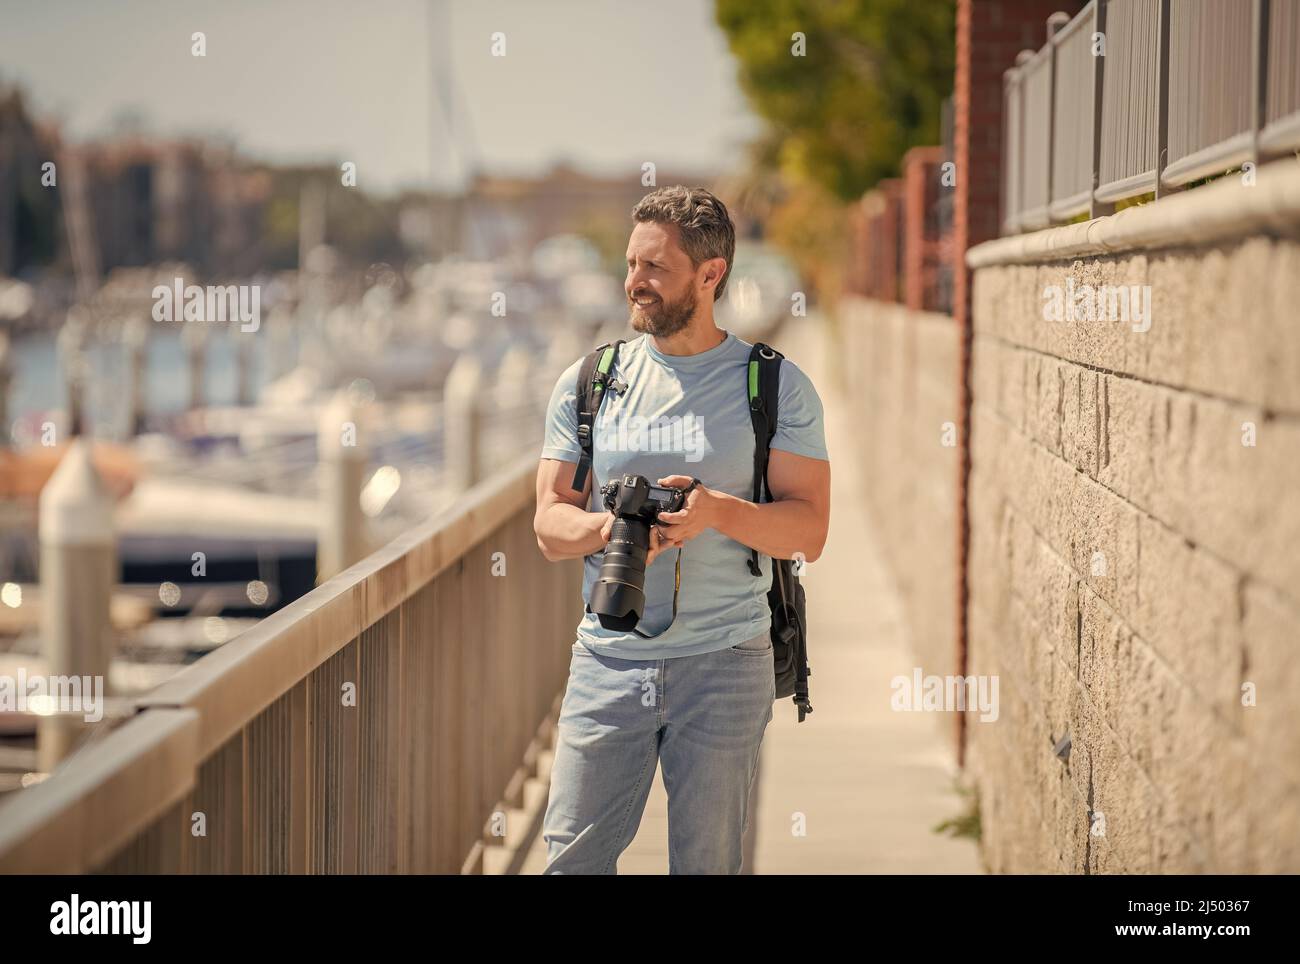 Uomo tenere la macchina fotografica in piedi sulla passeggiata. Fotografia di vacanza. Fotografia di viaggio Foto Stock